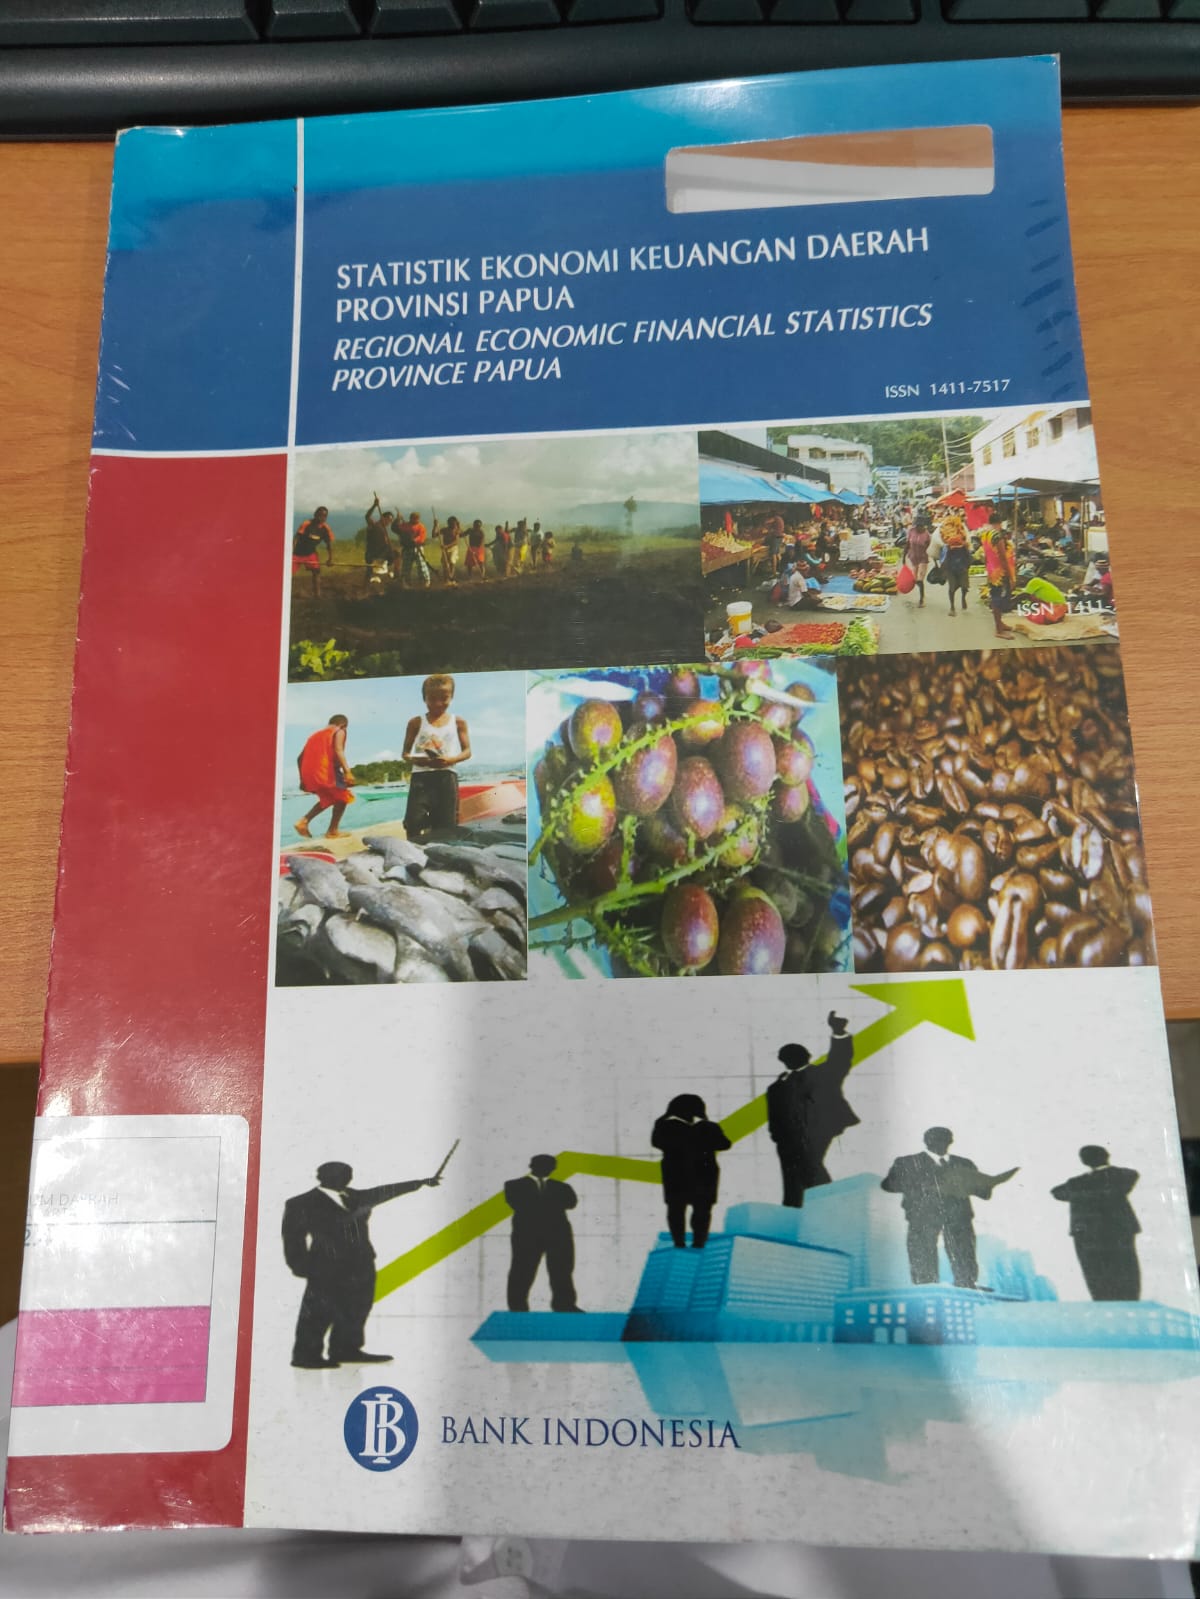 Statistik Ekonomi Keuangan Daerah Provinsi Papua Vol 9 No. 5 Bulan Mei 2011